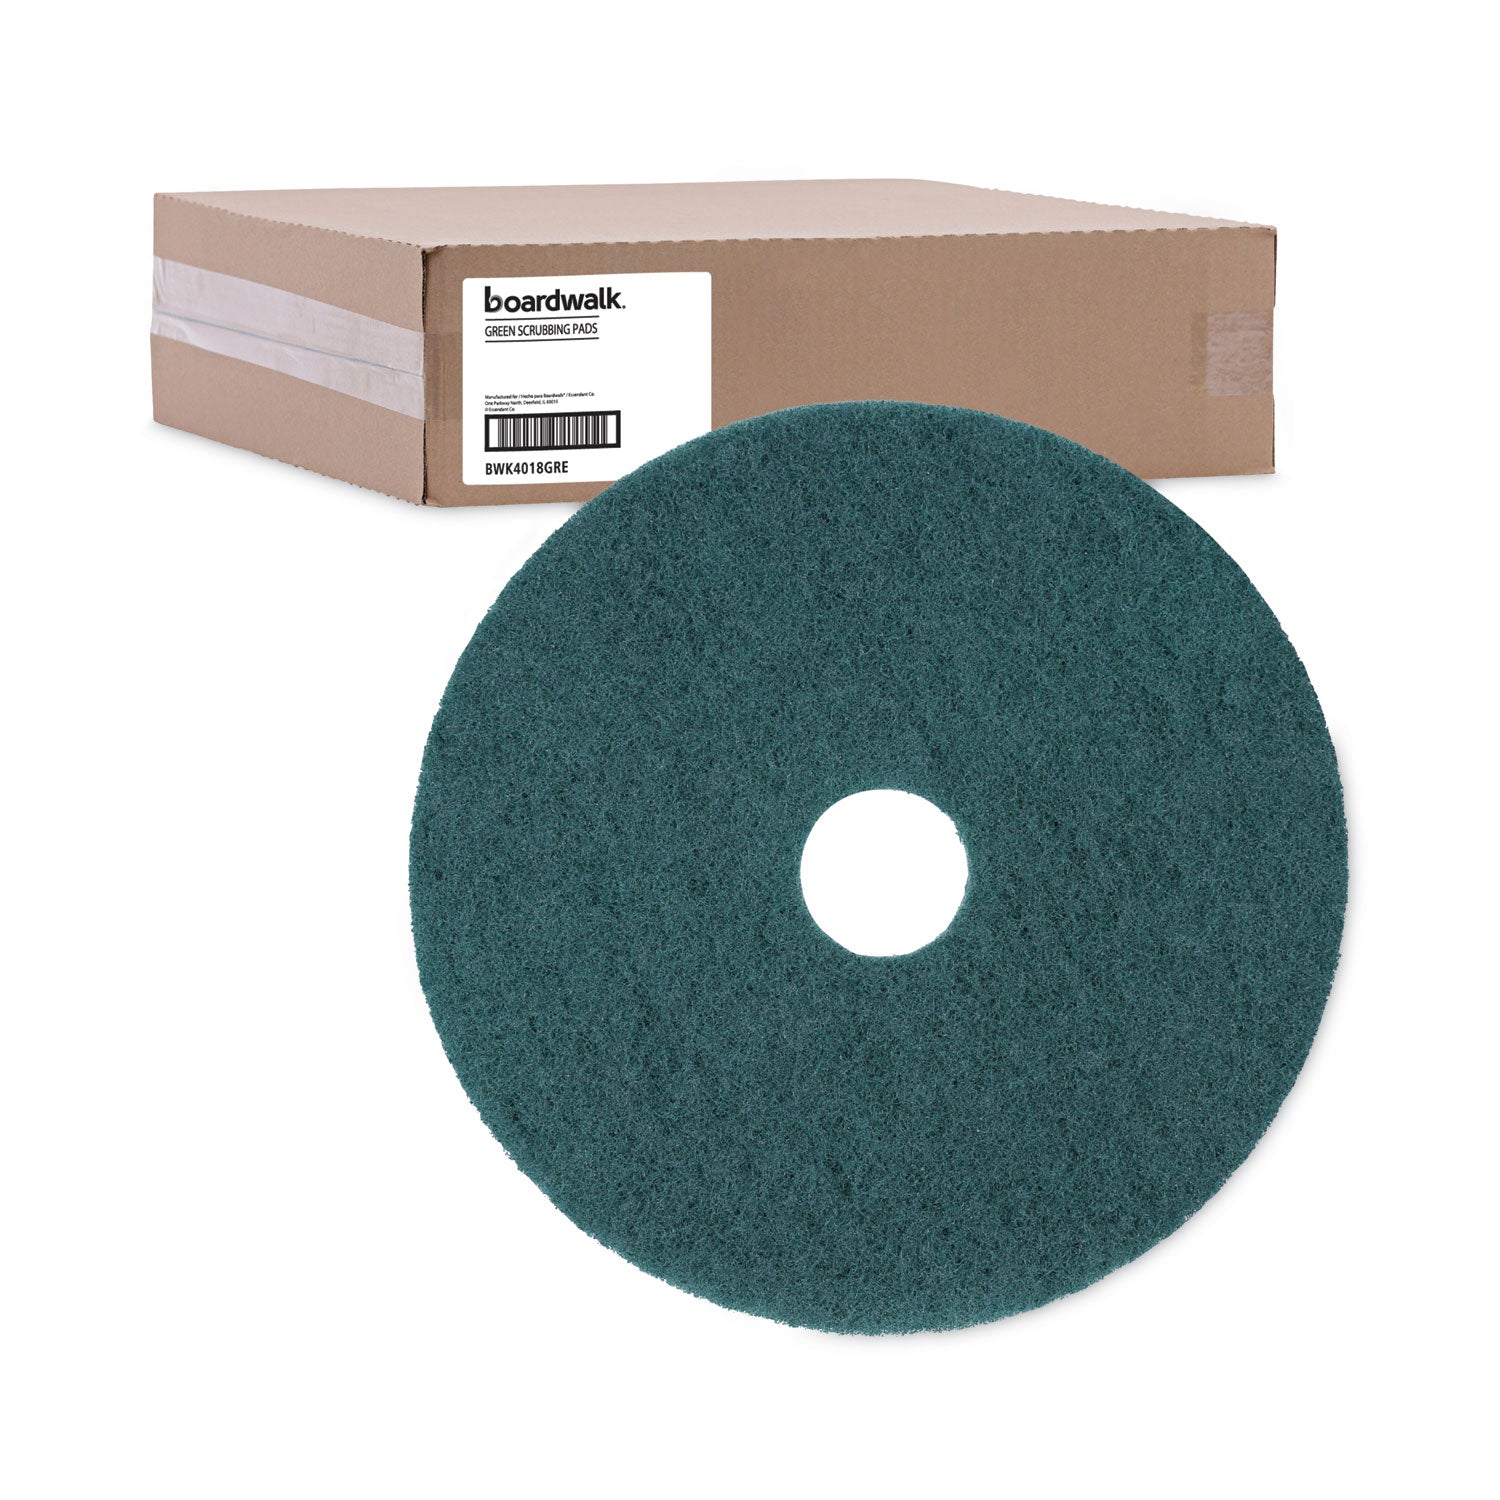 heavy-duty-scrubbing-floor-pads-18-diameter-green-5-carton_bwk4018gre - 5